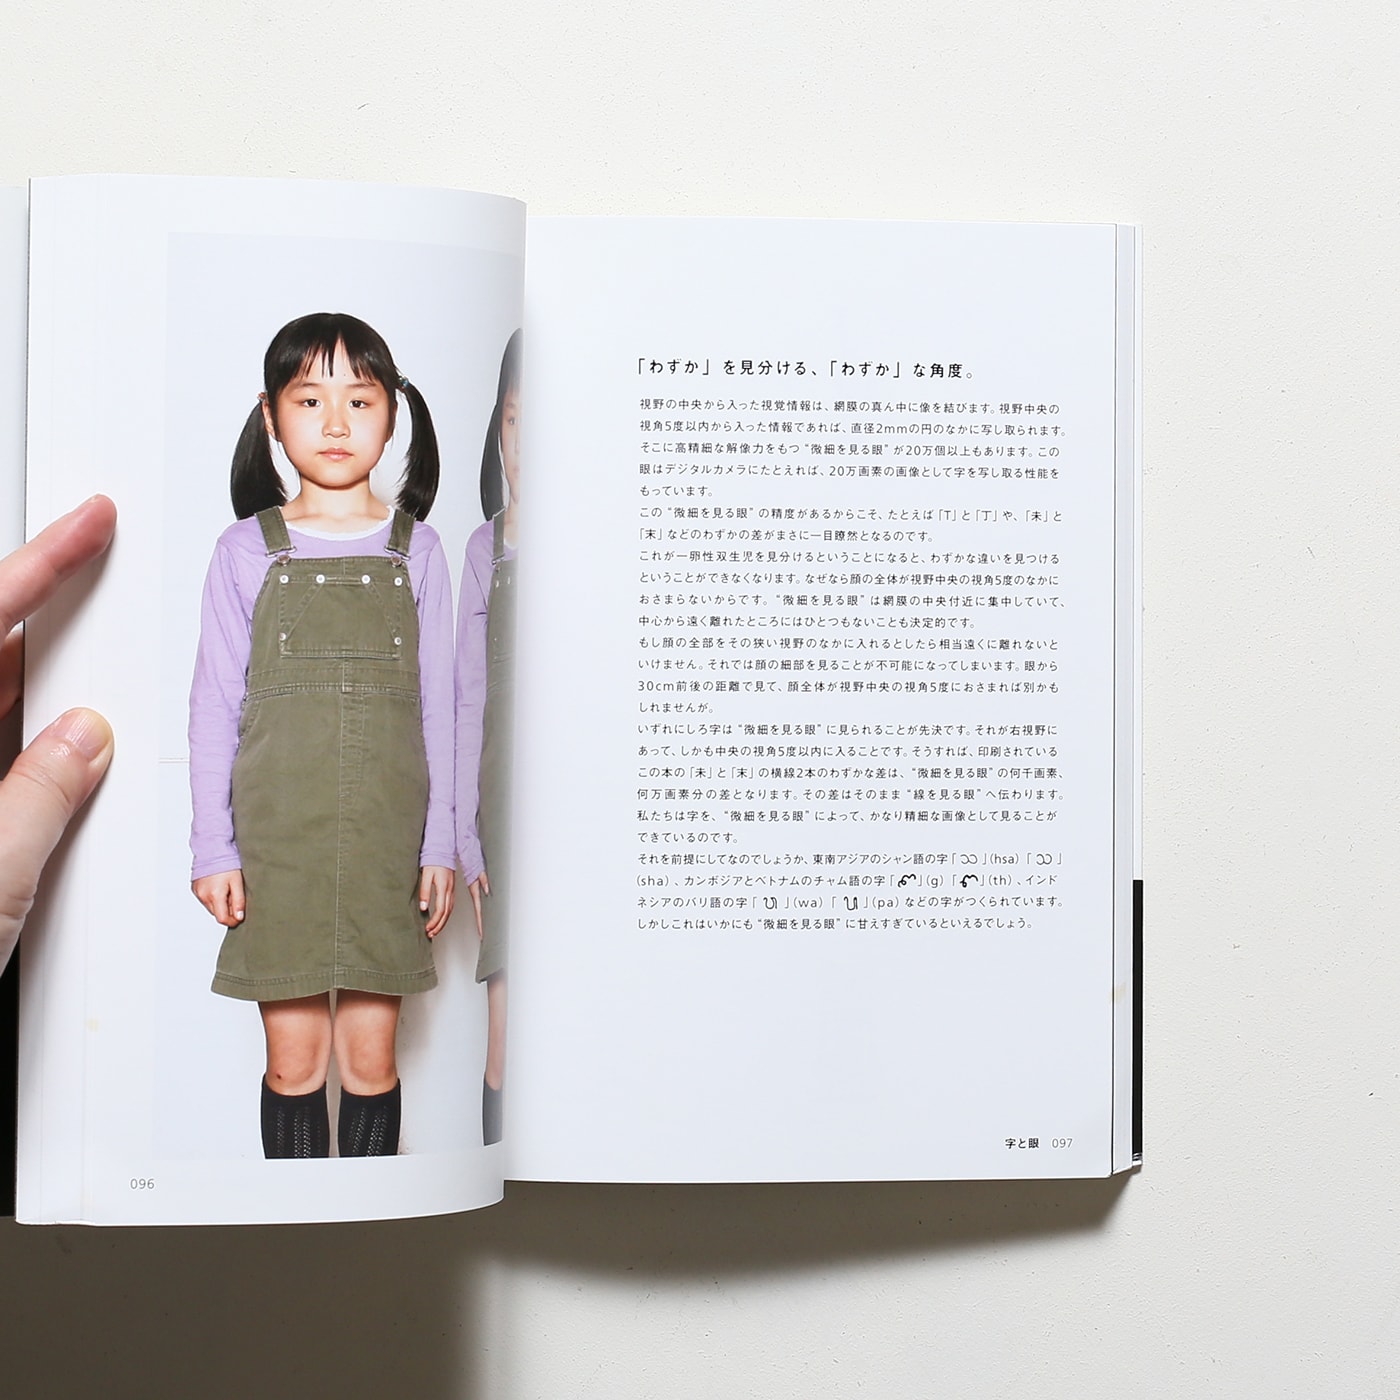 字本 Jiborn : A Book of Letters and Characters